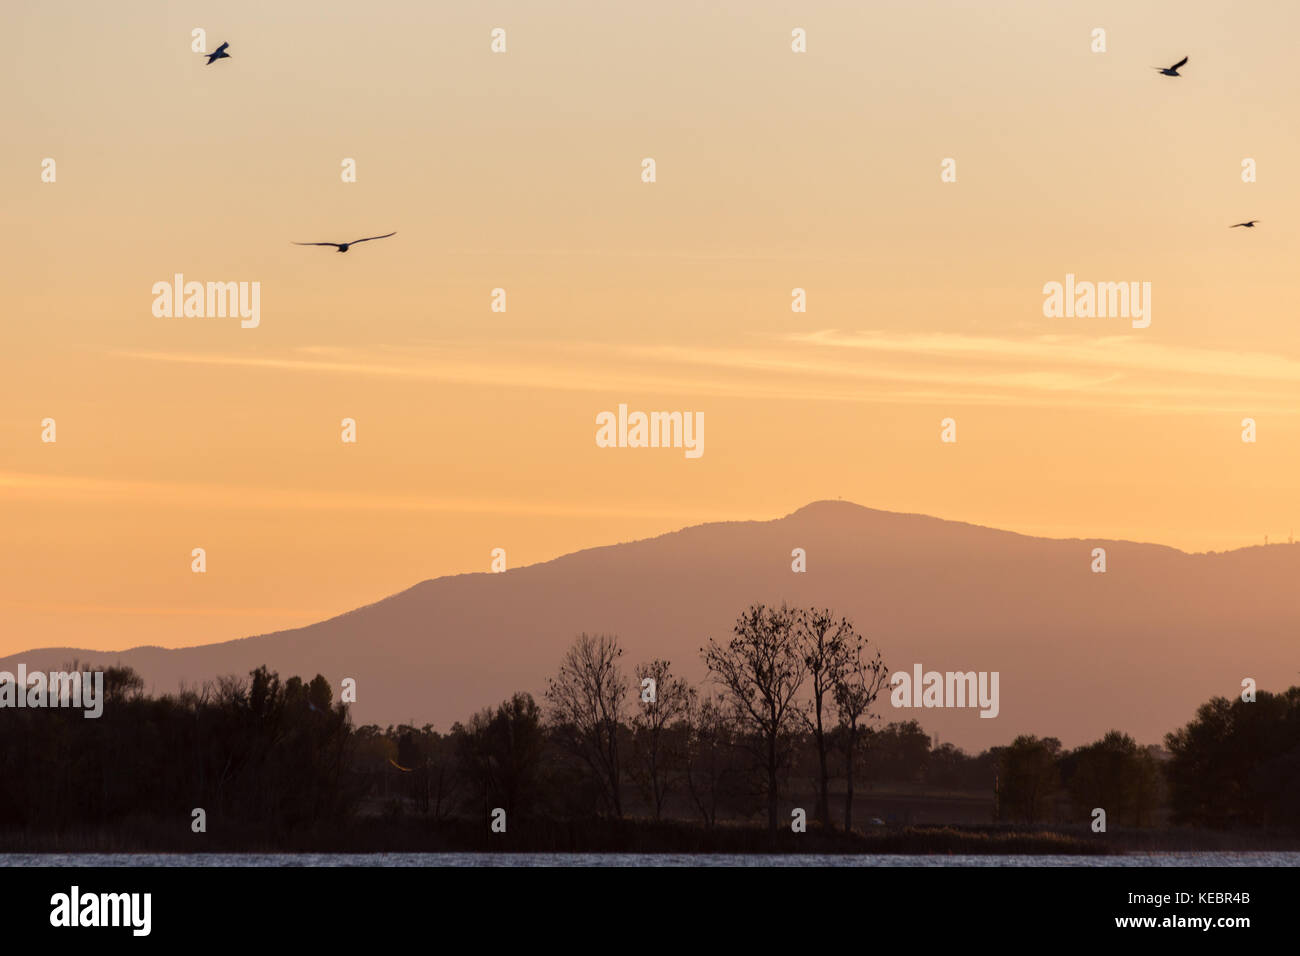 Vol de mouettes au-dessus d'un lac au coucher du soleil, avec des silhouettes d'arbres et montagnes au loin Banque D'Images